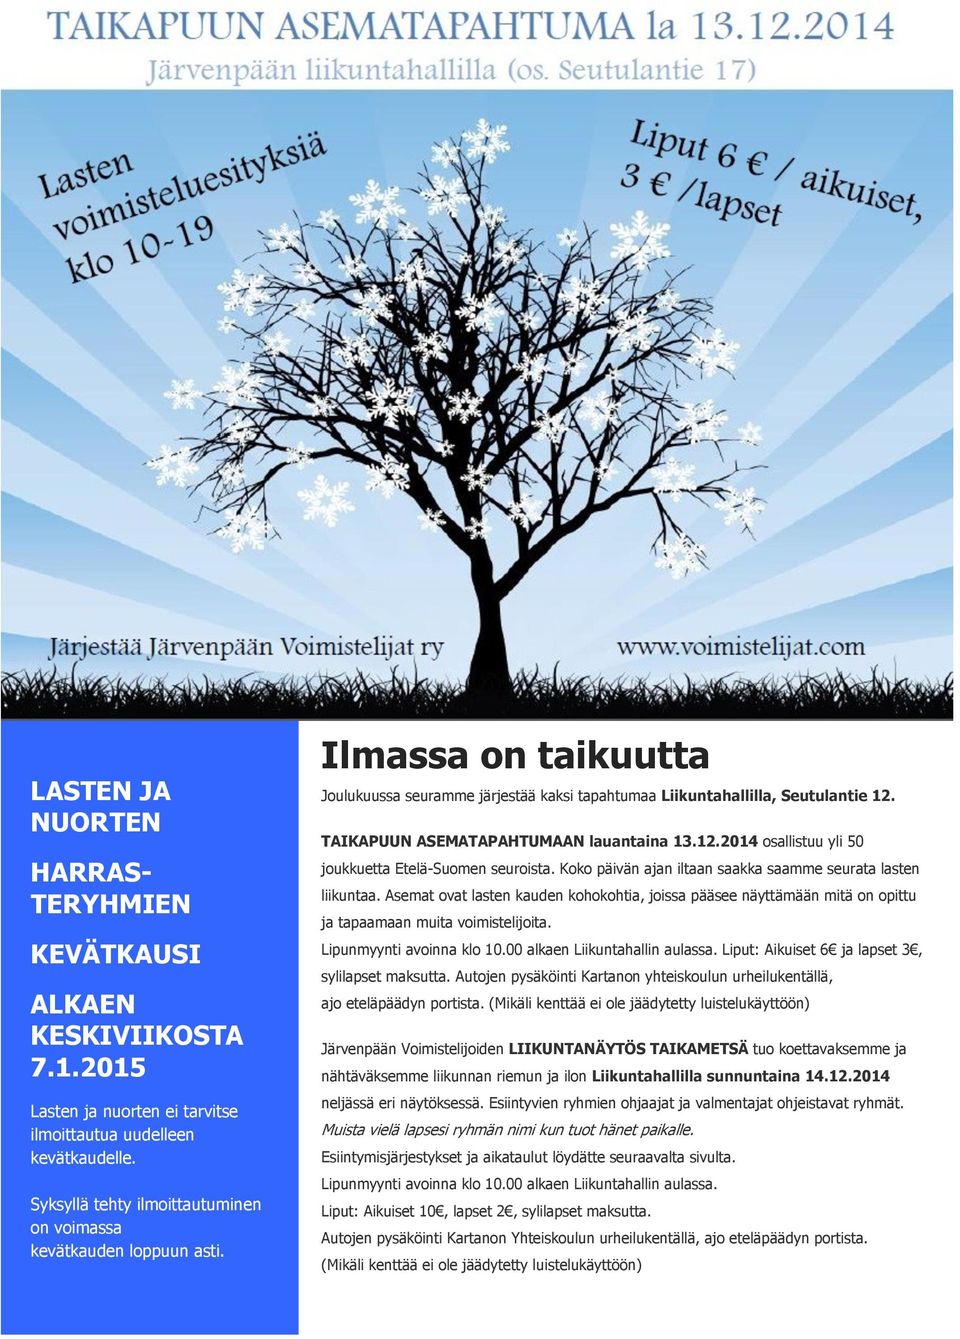 TAIKAPUUN ASEMATAPAHTUMAAN lauantaina 13.12.2014 osallistuu yli 50 joukkuetta Etelä-Suomen seuroista. Koko päivän ajan iltaan saakka saamme seurata lasten liikuntaa.